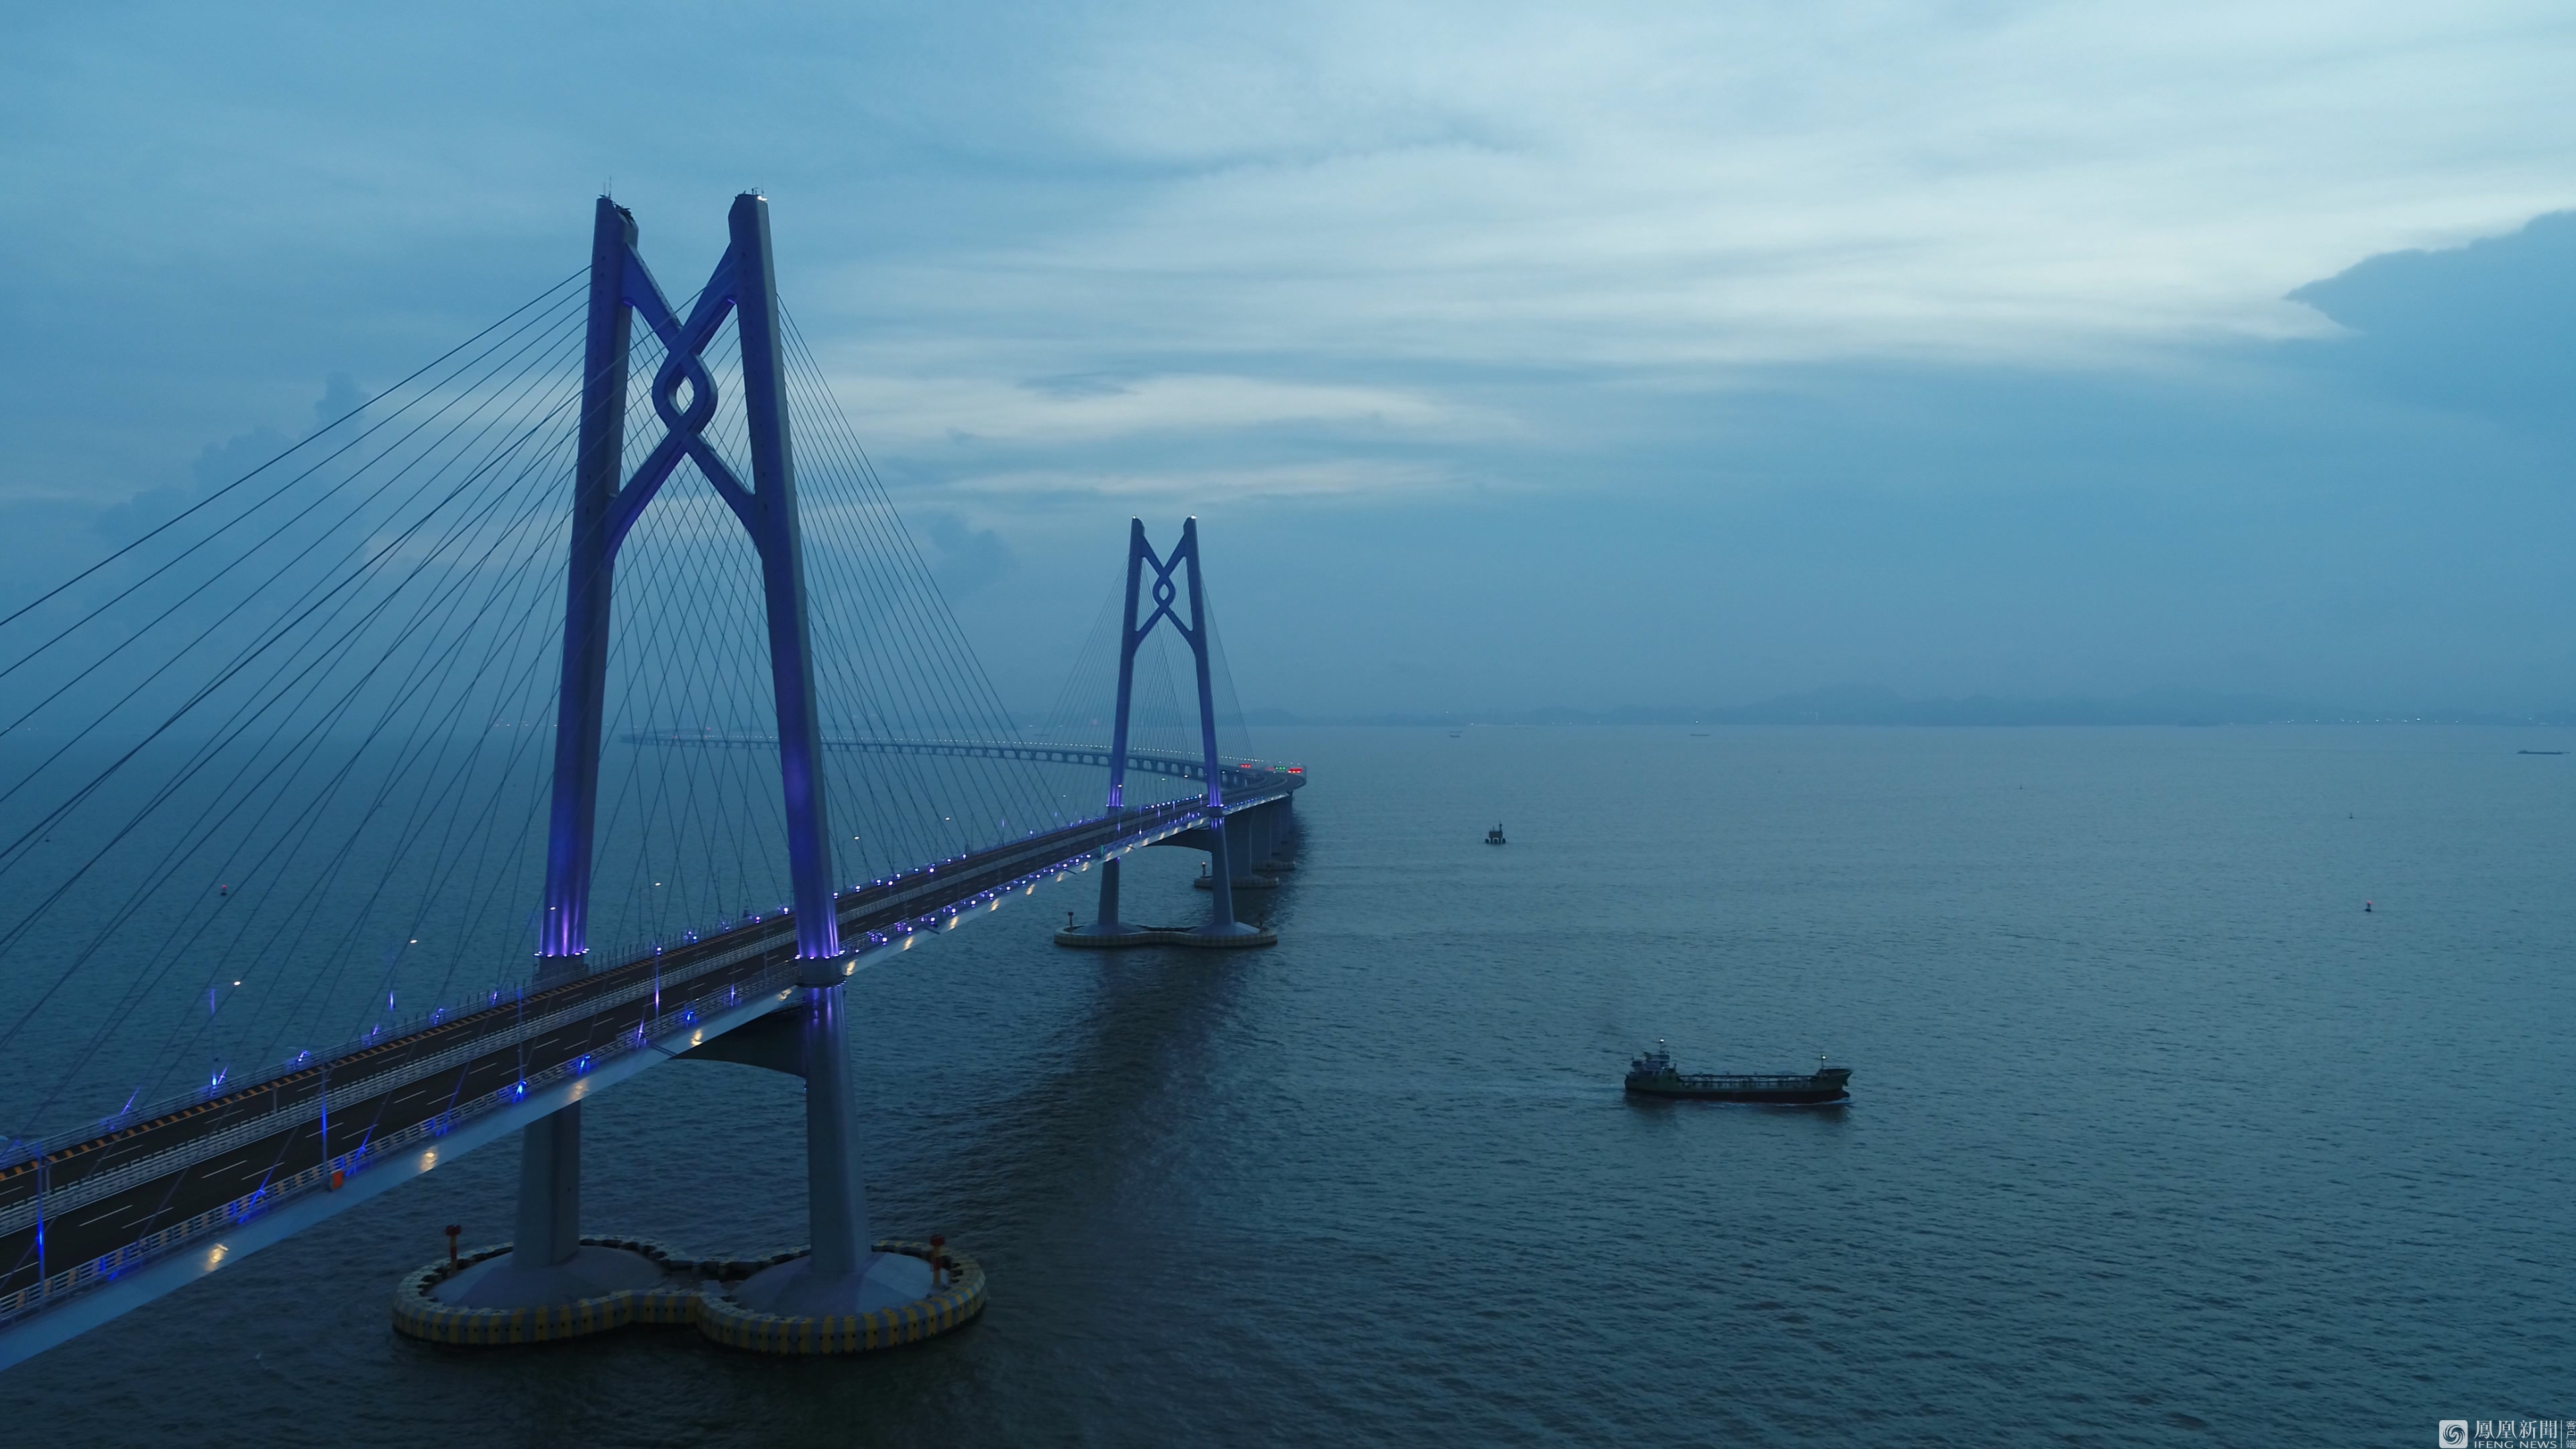 港珠澳大桥鸟瞰图全景图片